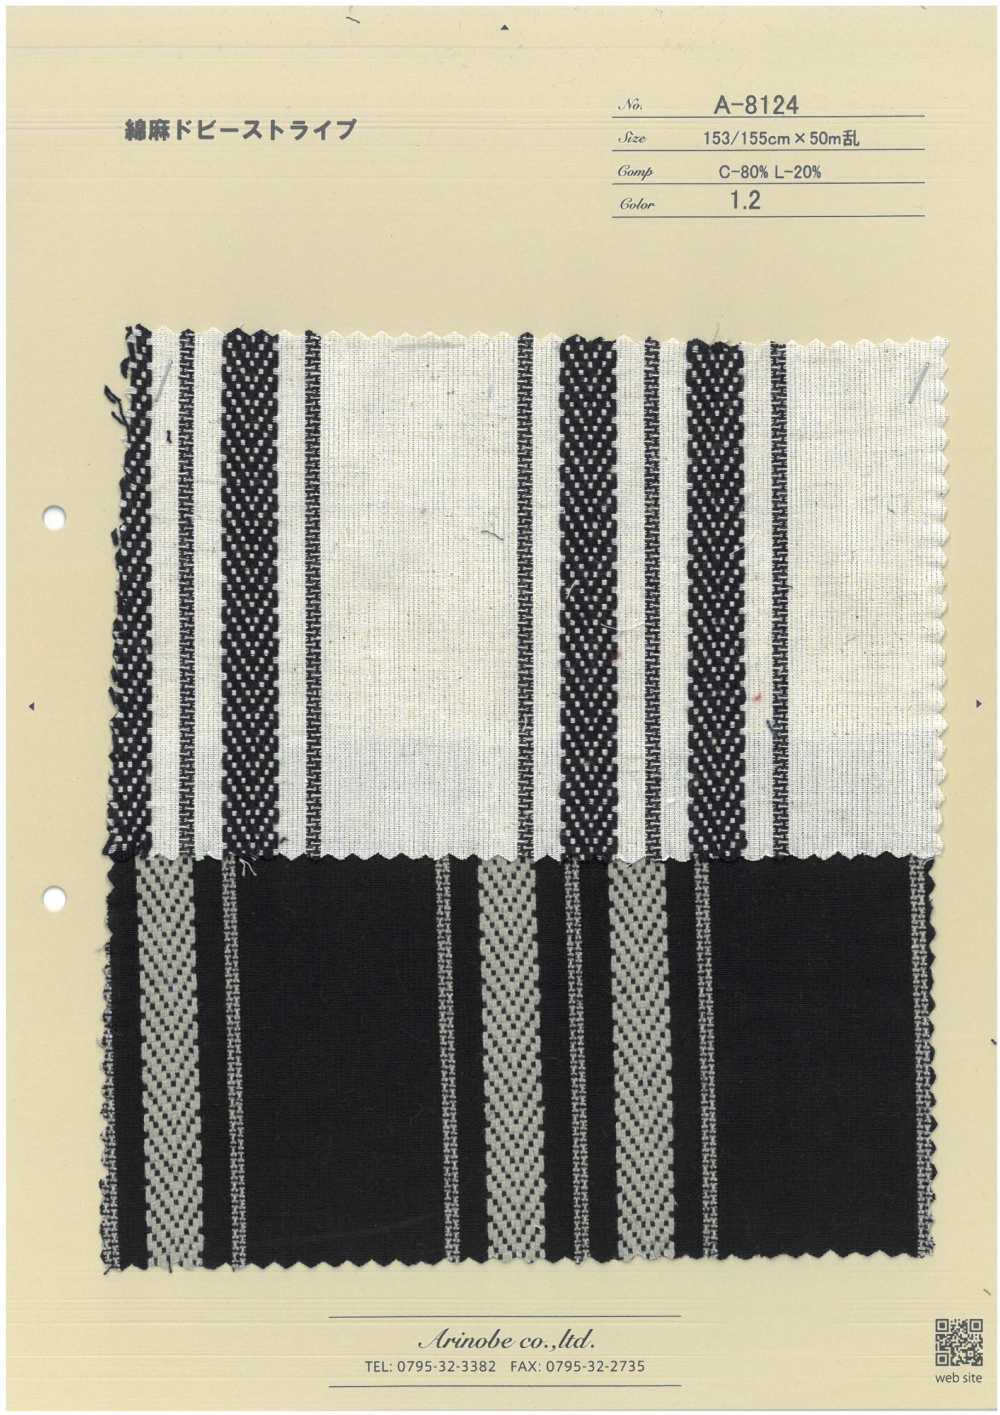 A-8124 Dobby-Streifen Aus Baumwollleinen[Textilgewebe] ARINOBE CO., LTD.